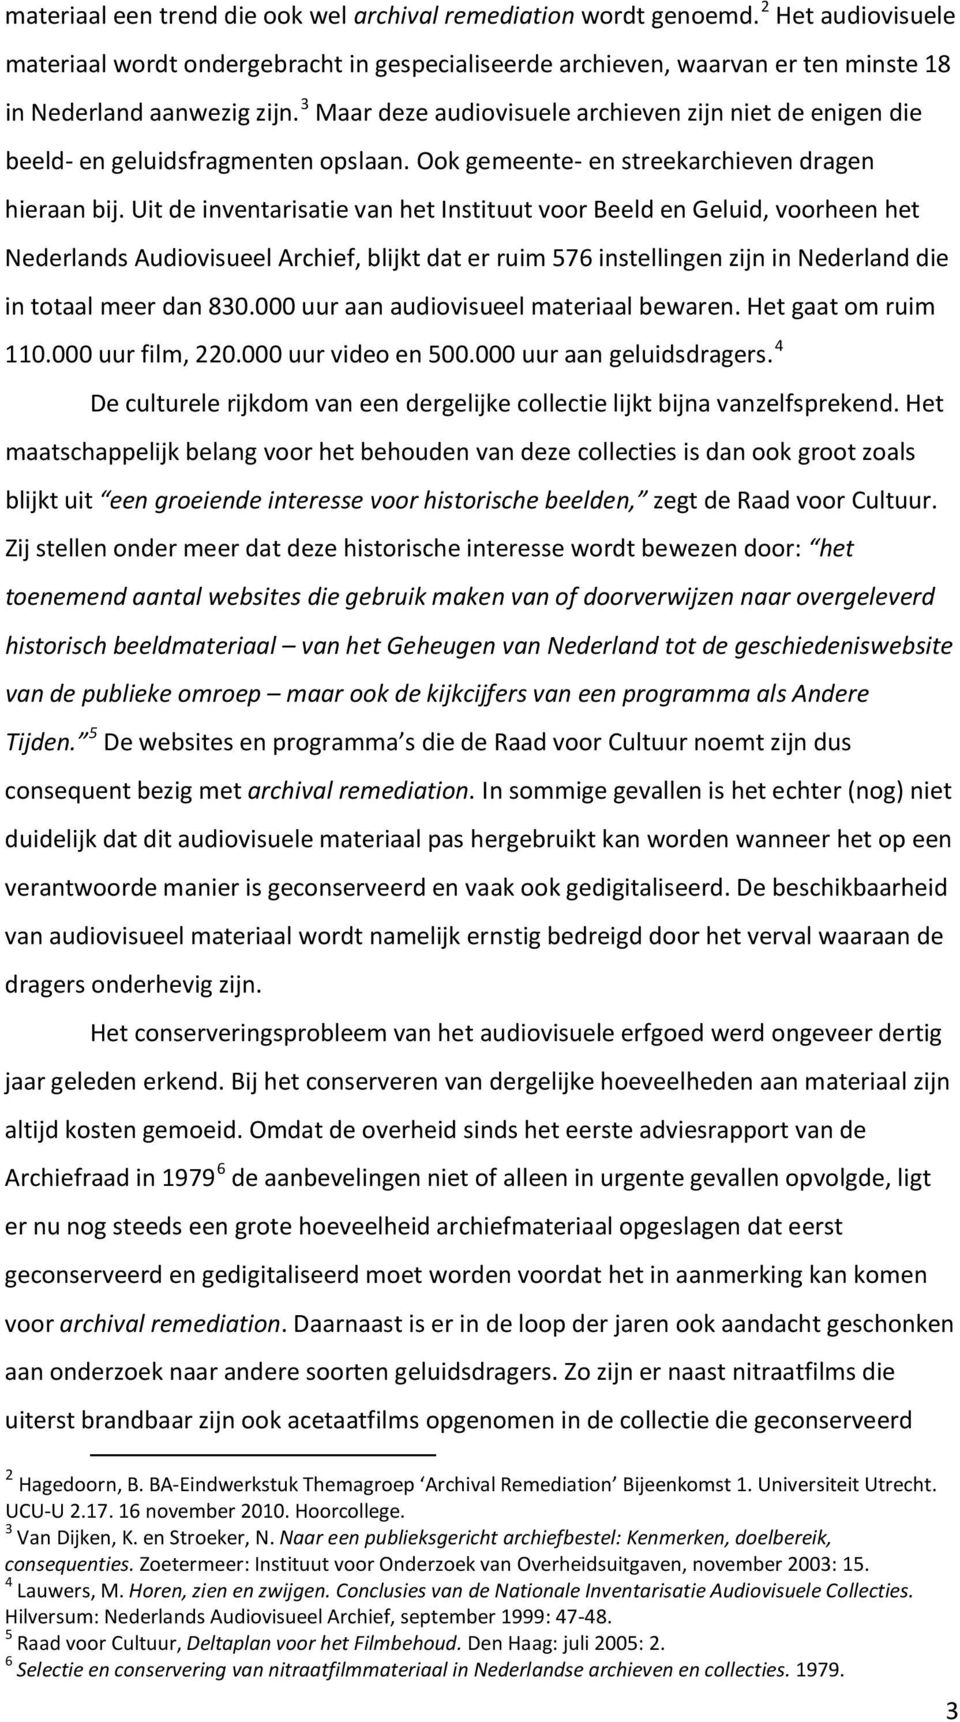 Uit de inventarisatie van het Instituut voor Beeld en Geluid, voorheen het Nederlands Audiovisueel Archief, blijkt dat er ruim 576 instellingen zijn in Nederland die in totaal meer dan 830.